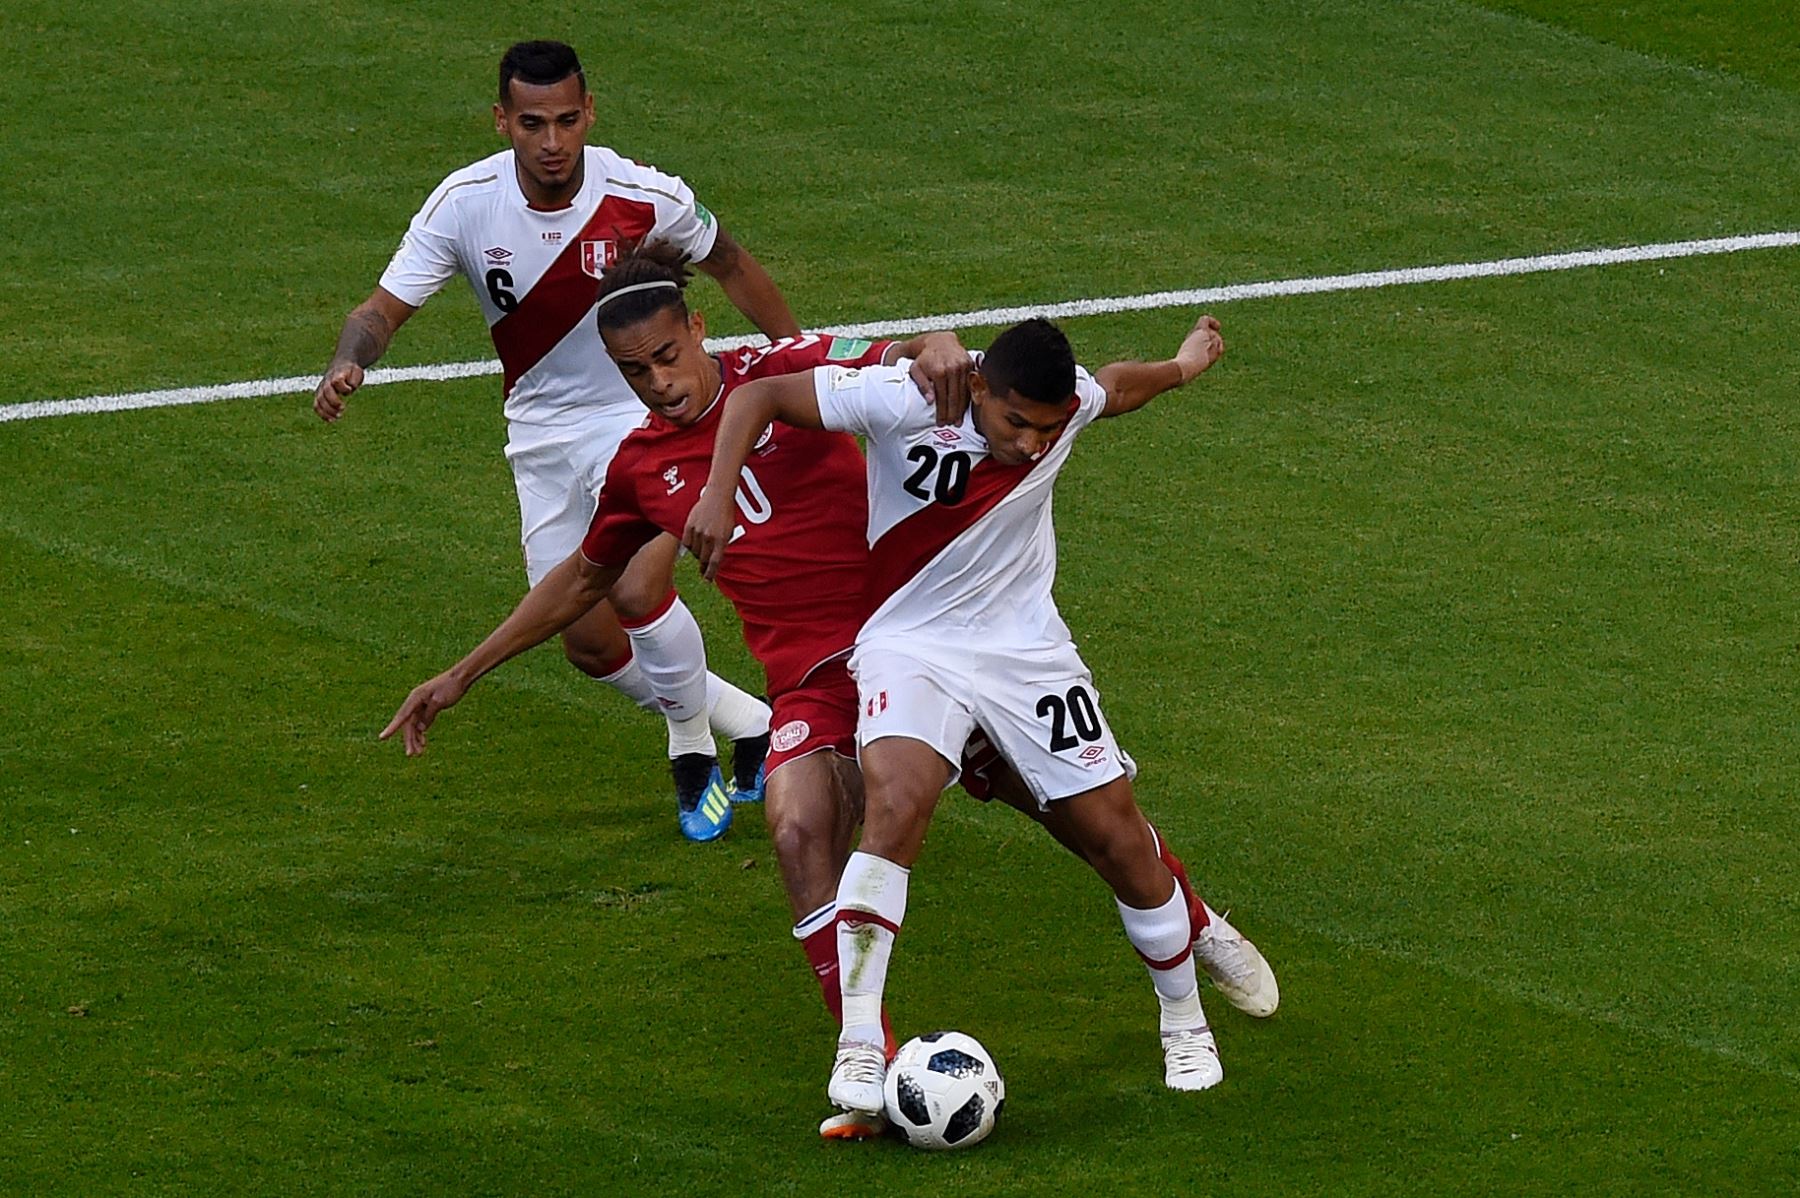 El delantero danés Yussuf Poulsen (C) aborda al centrocampista peruano Edison Flores (R) durante el partido de fútbol del Grupo C de la Copa Mundial Rusia 2018 entre Perú y Dinamarca en el Mordovia Arena en Saransk el 16 de junio de 2018. Foto: AFP